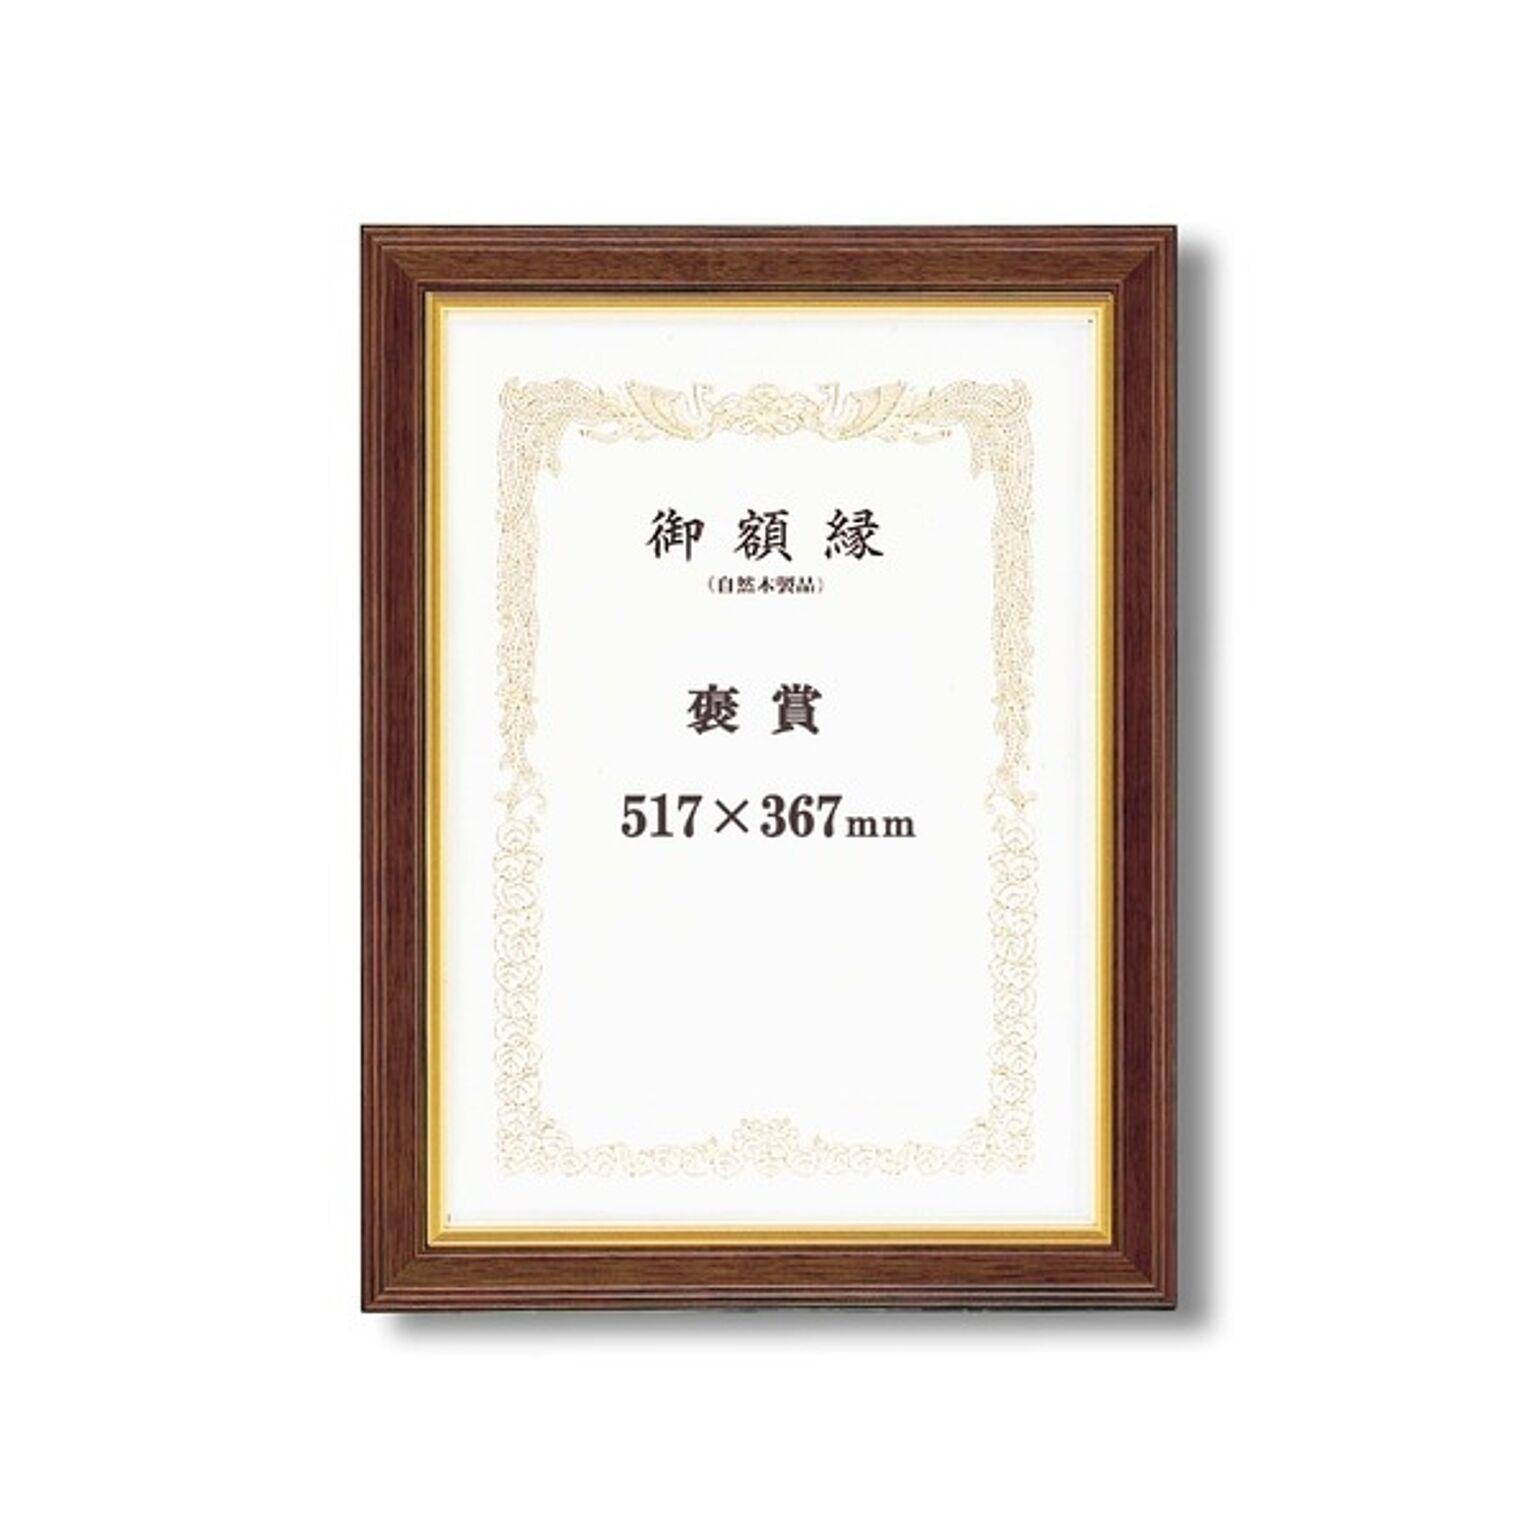 【高級感の漂う賞状額】 太いフレーム 木製 金のライン 魁五賞状額 褒賞 (517×367mm) ブラウン